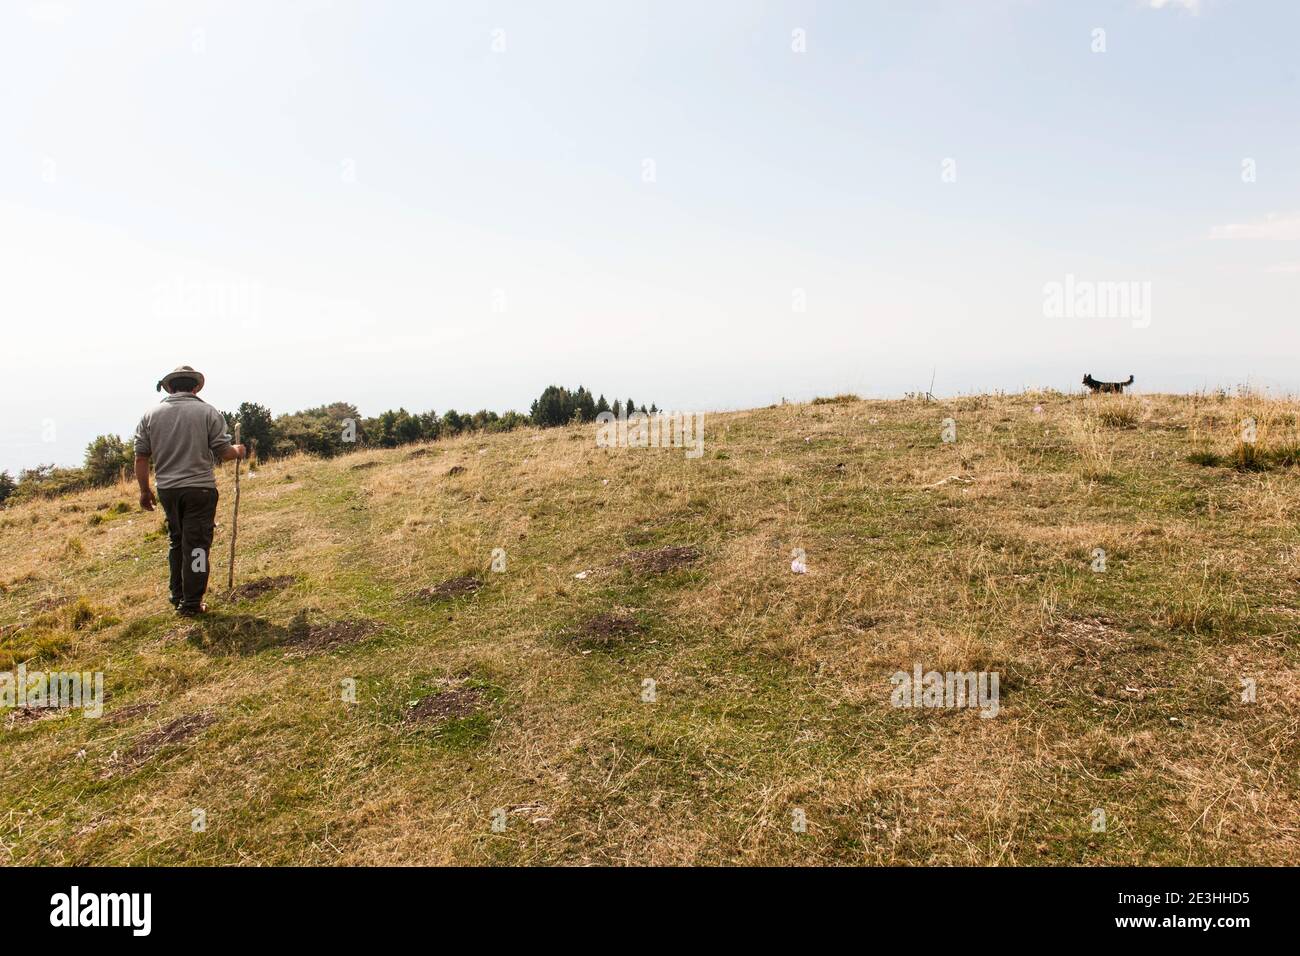 Altopiano del Cansiglio - Altopiano del Cansiglio - ein Hirte nimmt seine Schafe auf dem Altopiano del Cansiglio weiden, wo er 13 Hektar hat Stockfoto